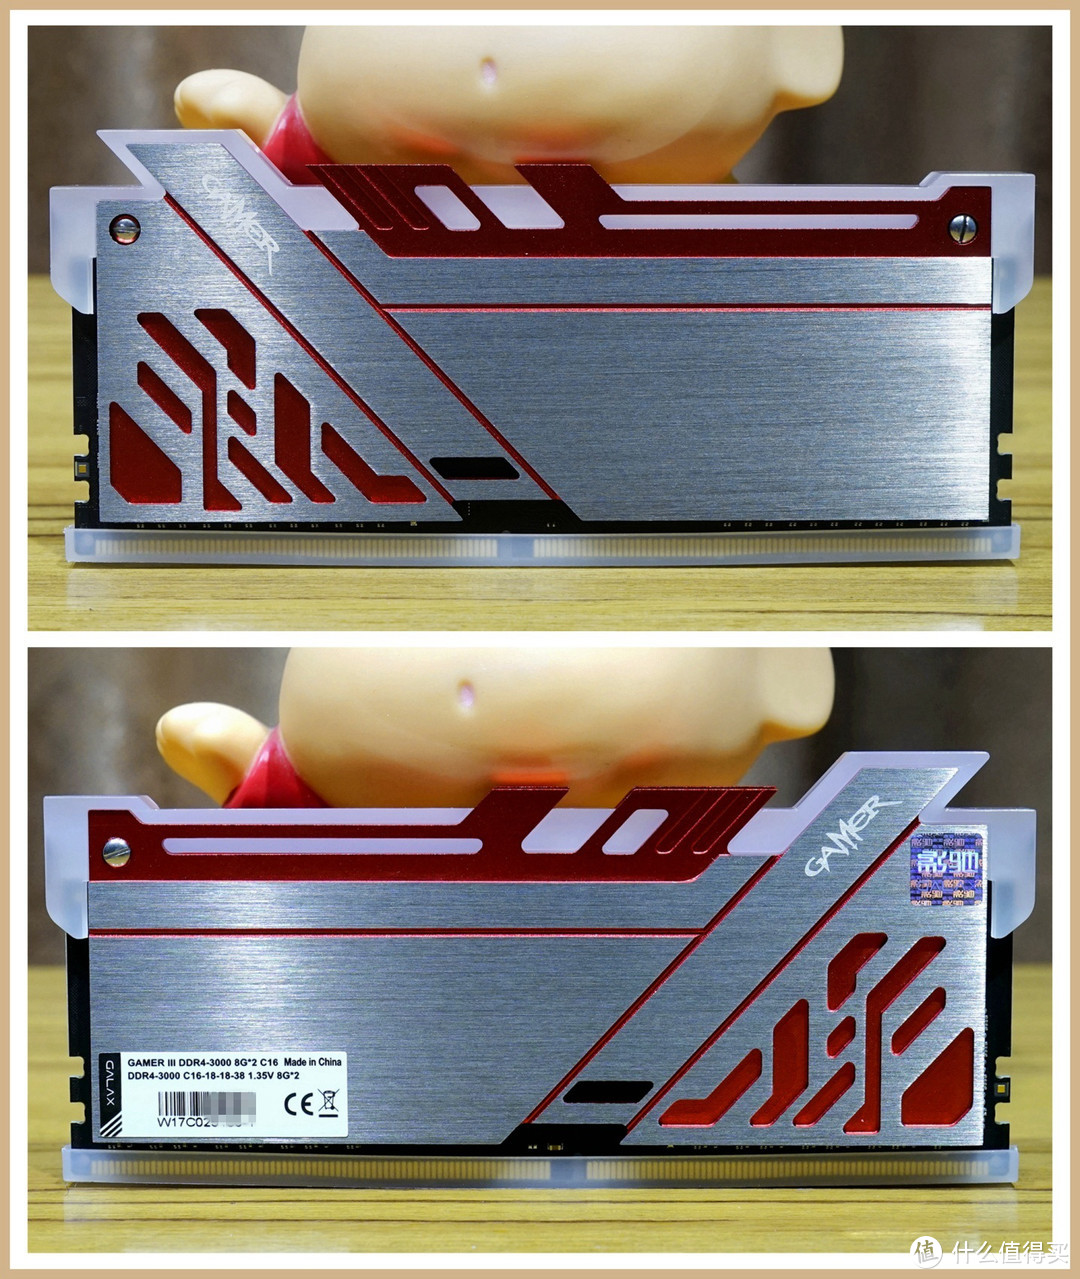 可以刷脸吃饭的欧若拉——影驰GAMER III极光RGB DDR4 3000内存入手开箱及详测